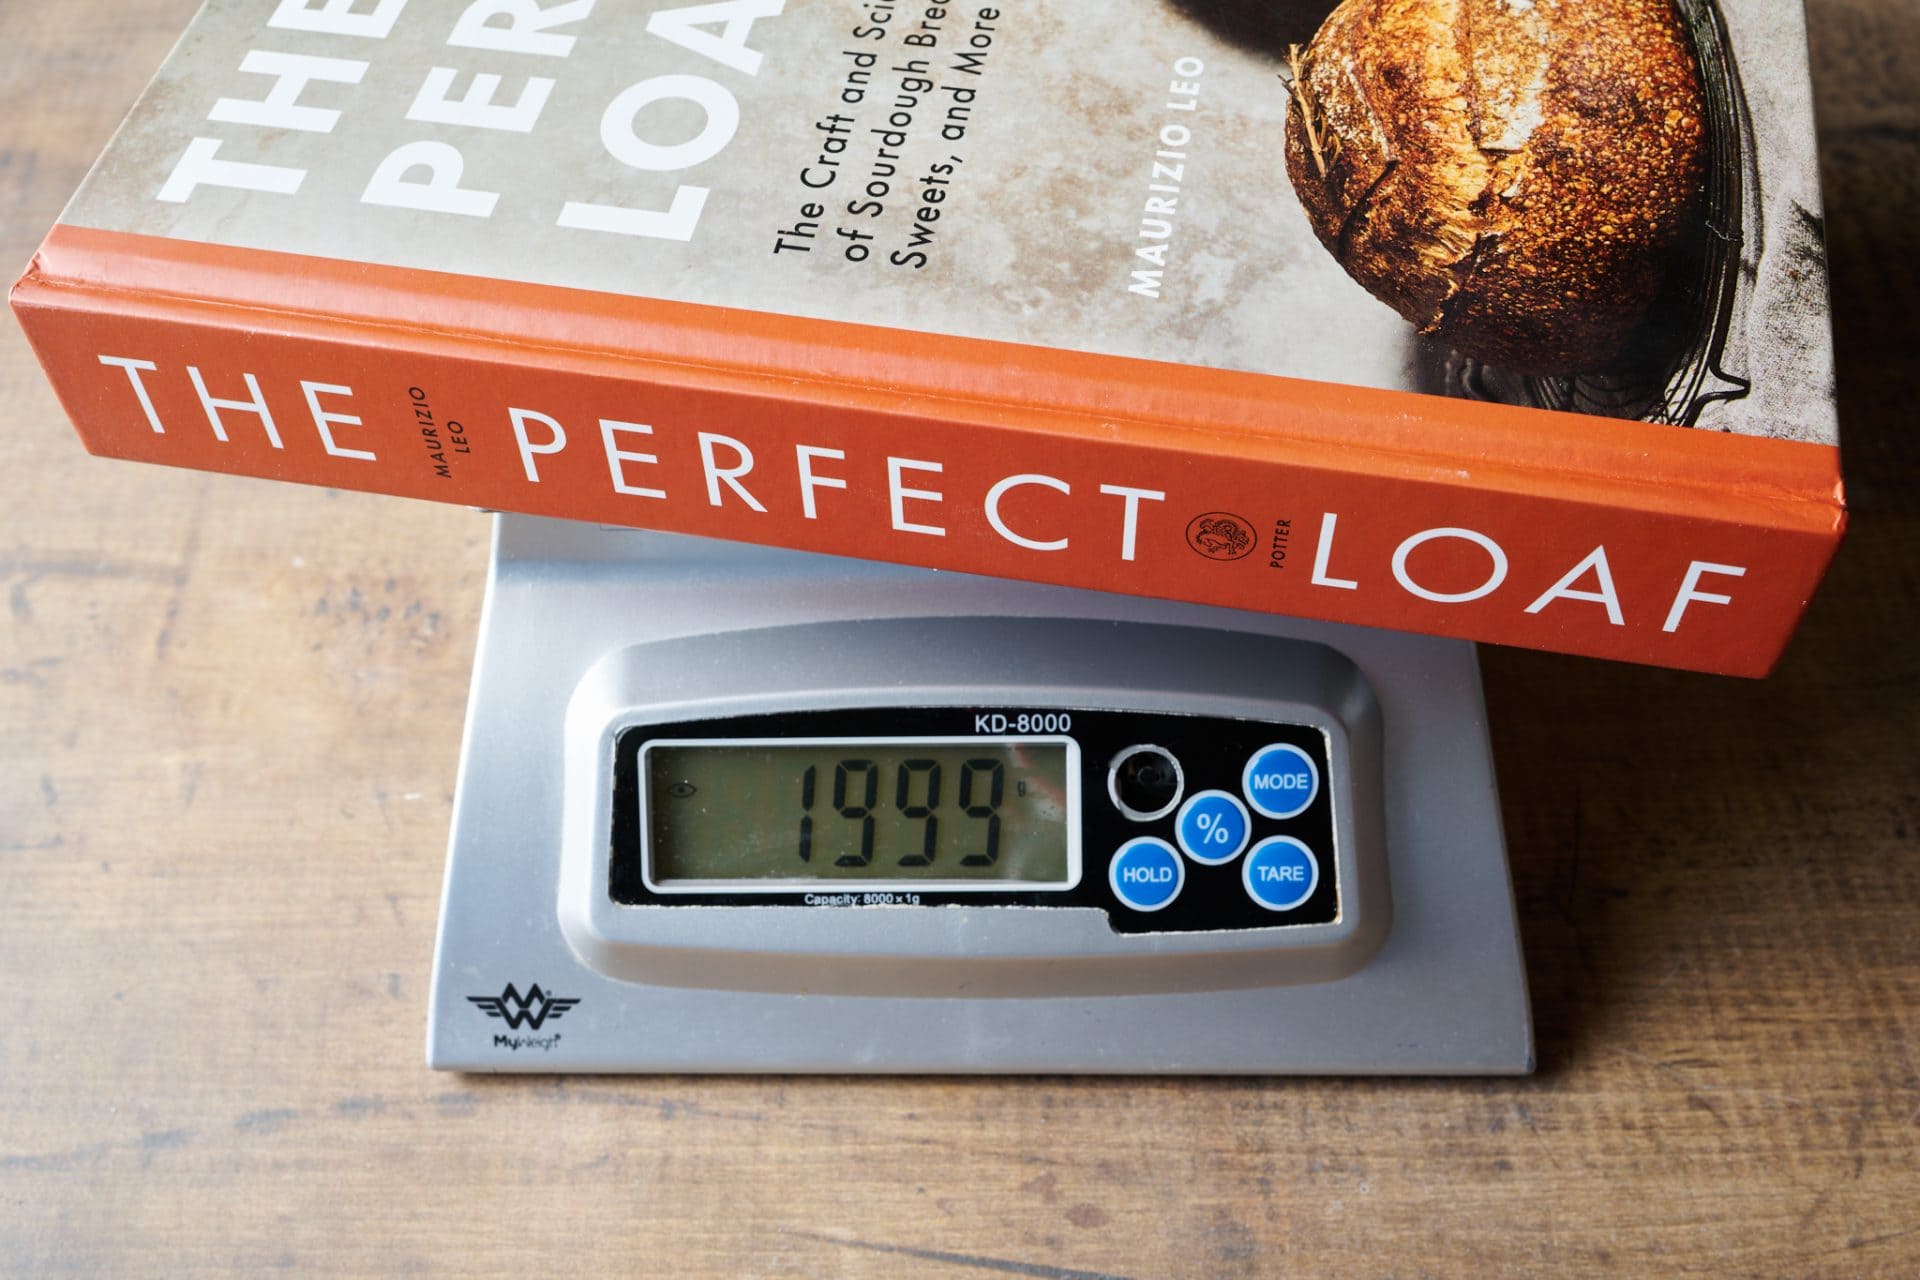 El libro de cocina Perfect Loaf es pesado